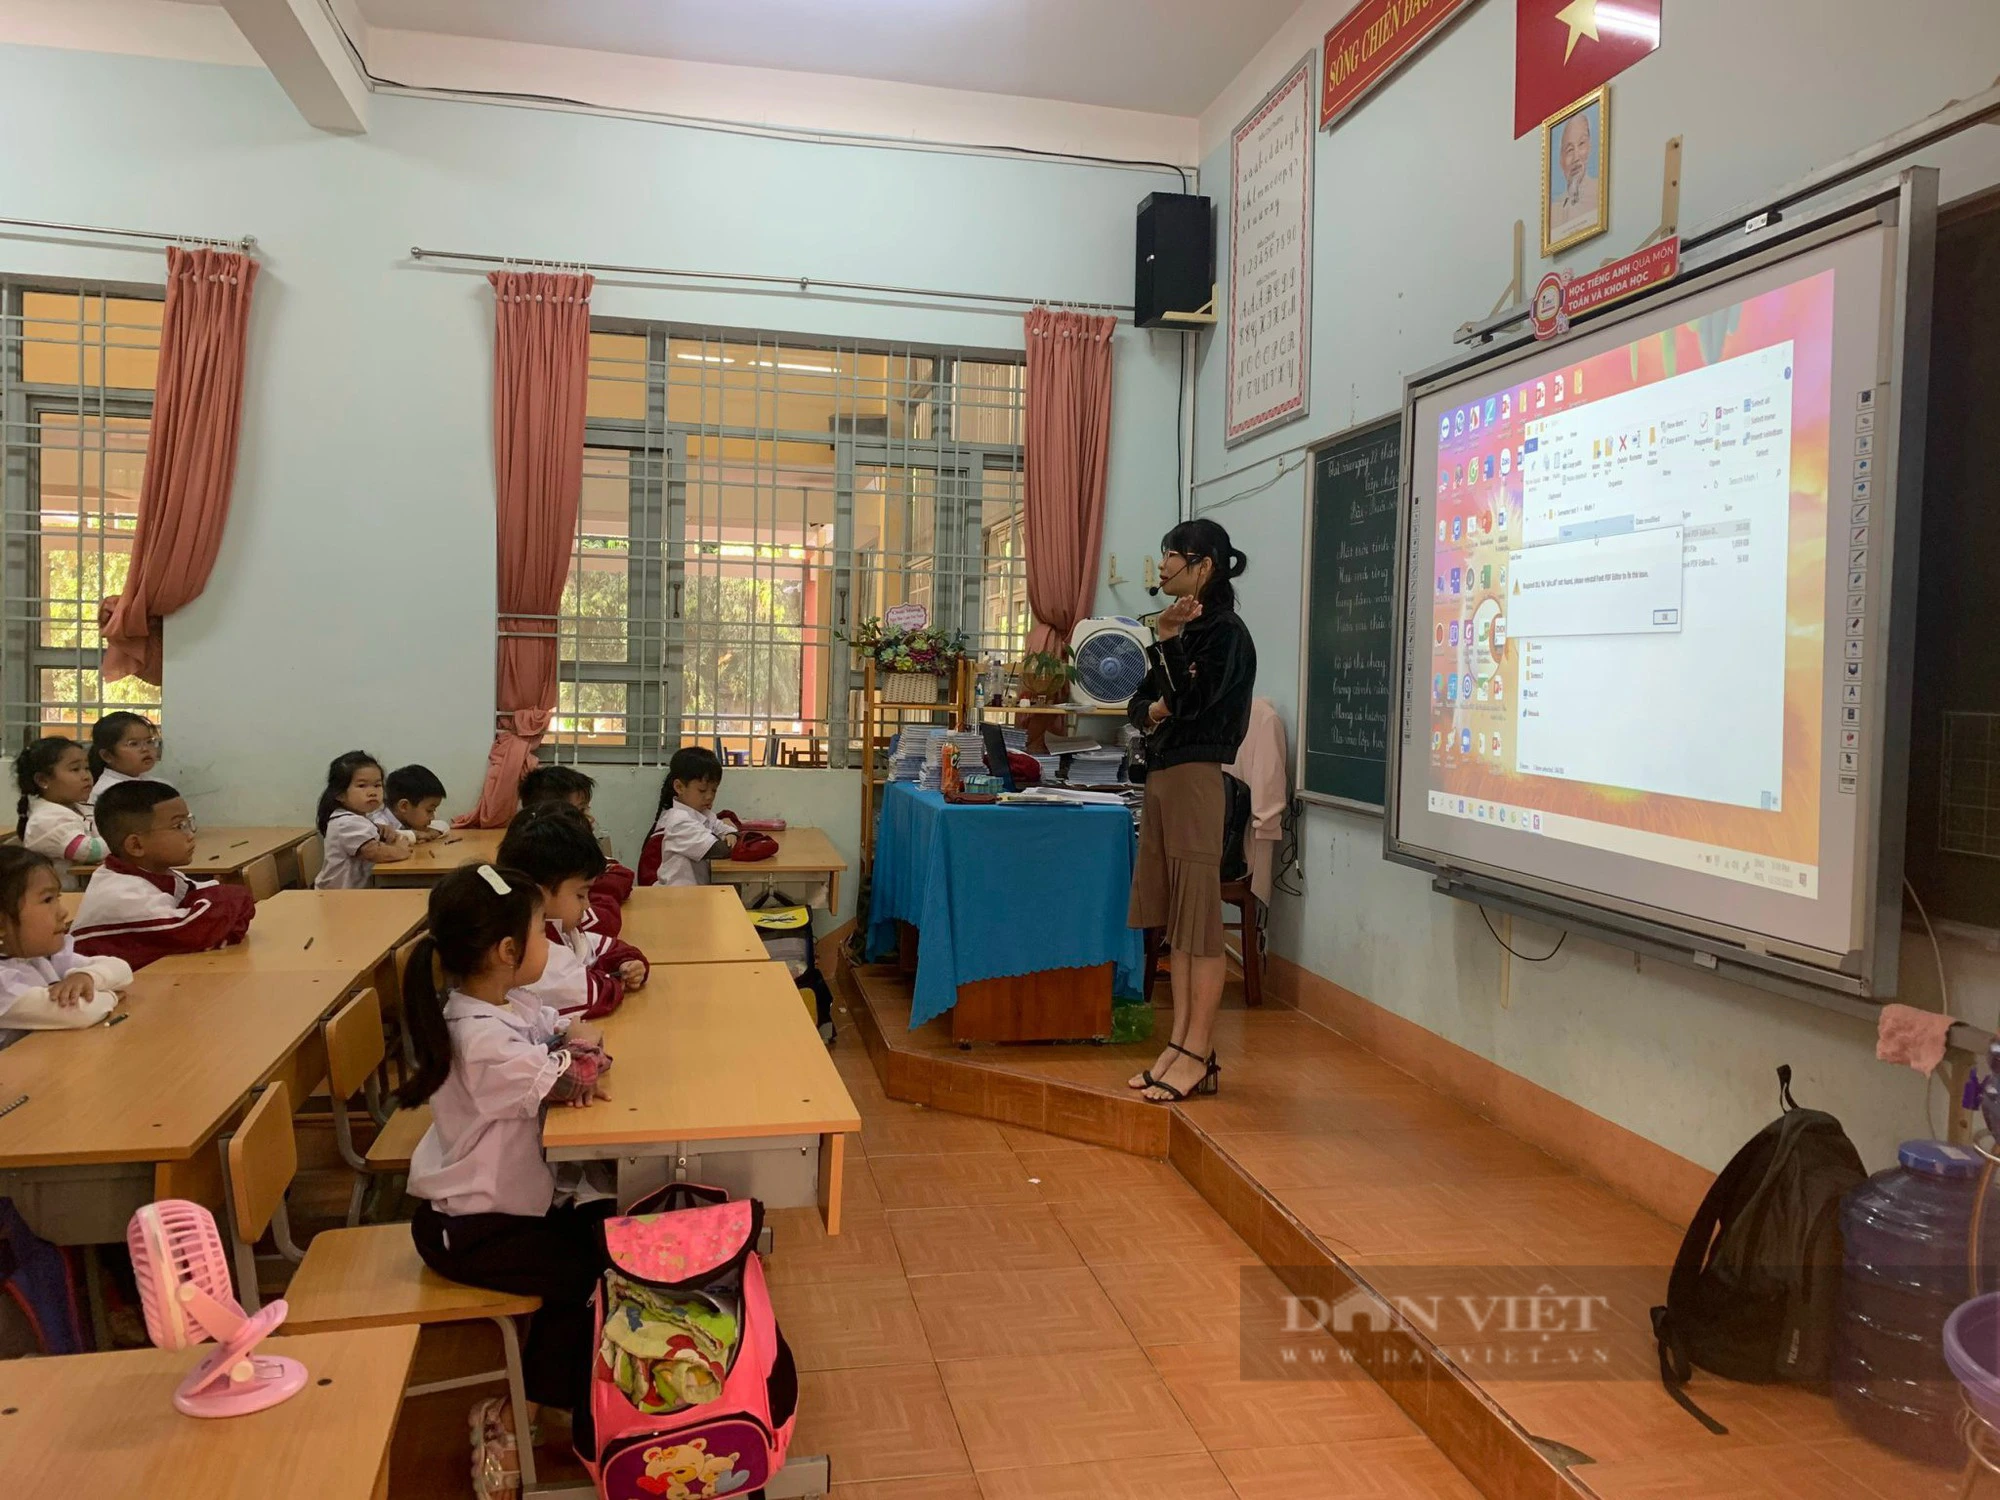 Liên kết đào tạo iSMART ở Đắk Lắk: Lãnh đạo ngành giáo dục nói “học phí quá cao”- Ảnh 1.